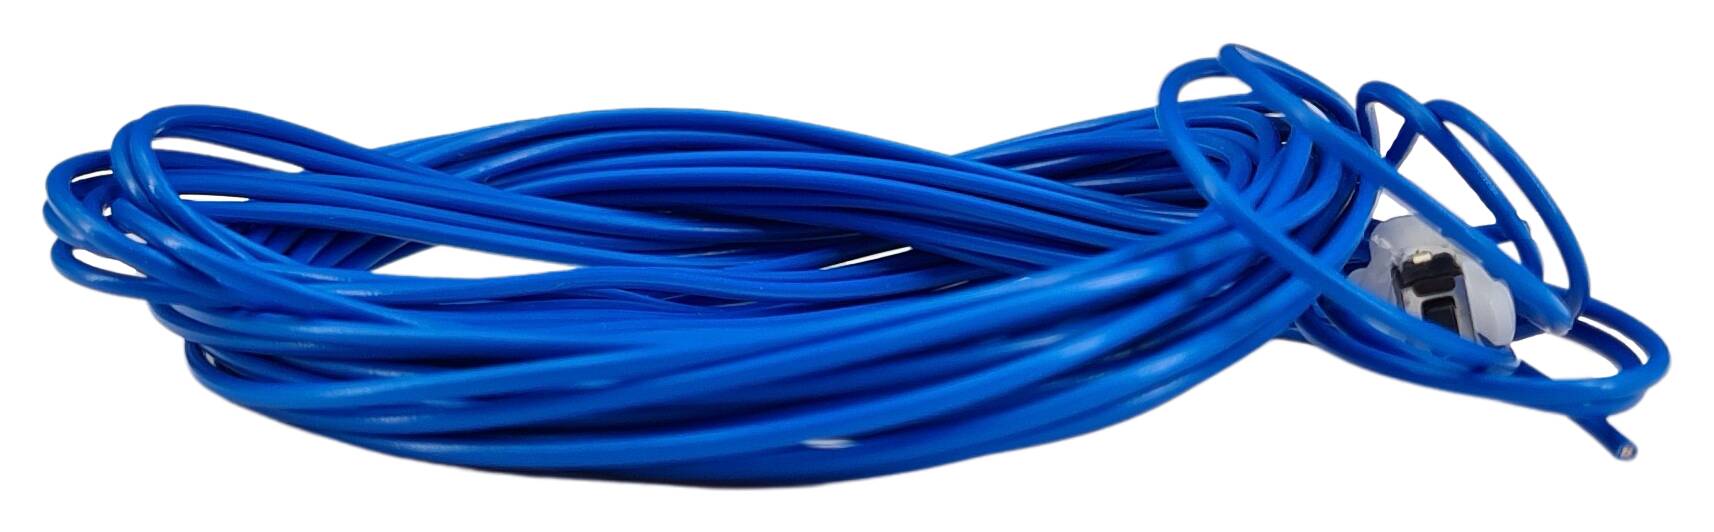 Taster f. Pouls-Dimmer m. Kabel 2.700 mm lg.mit Kugel  blau